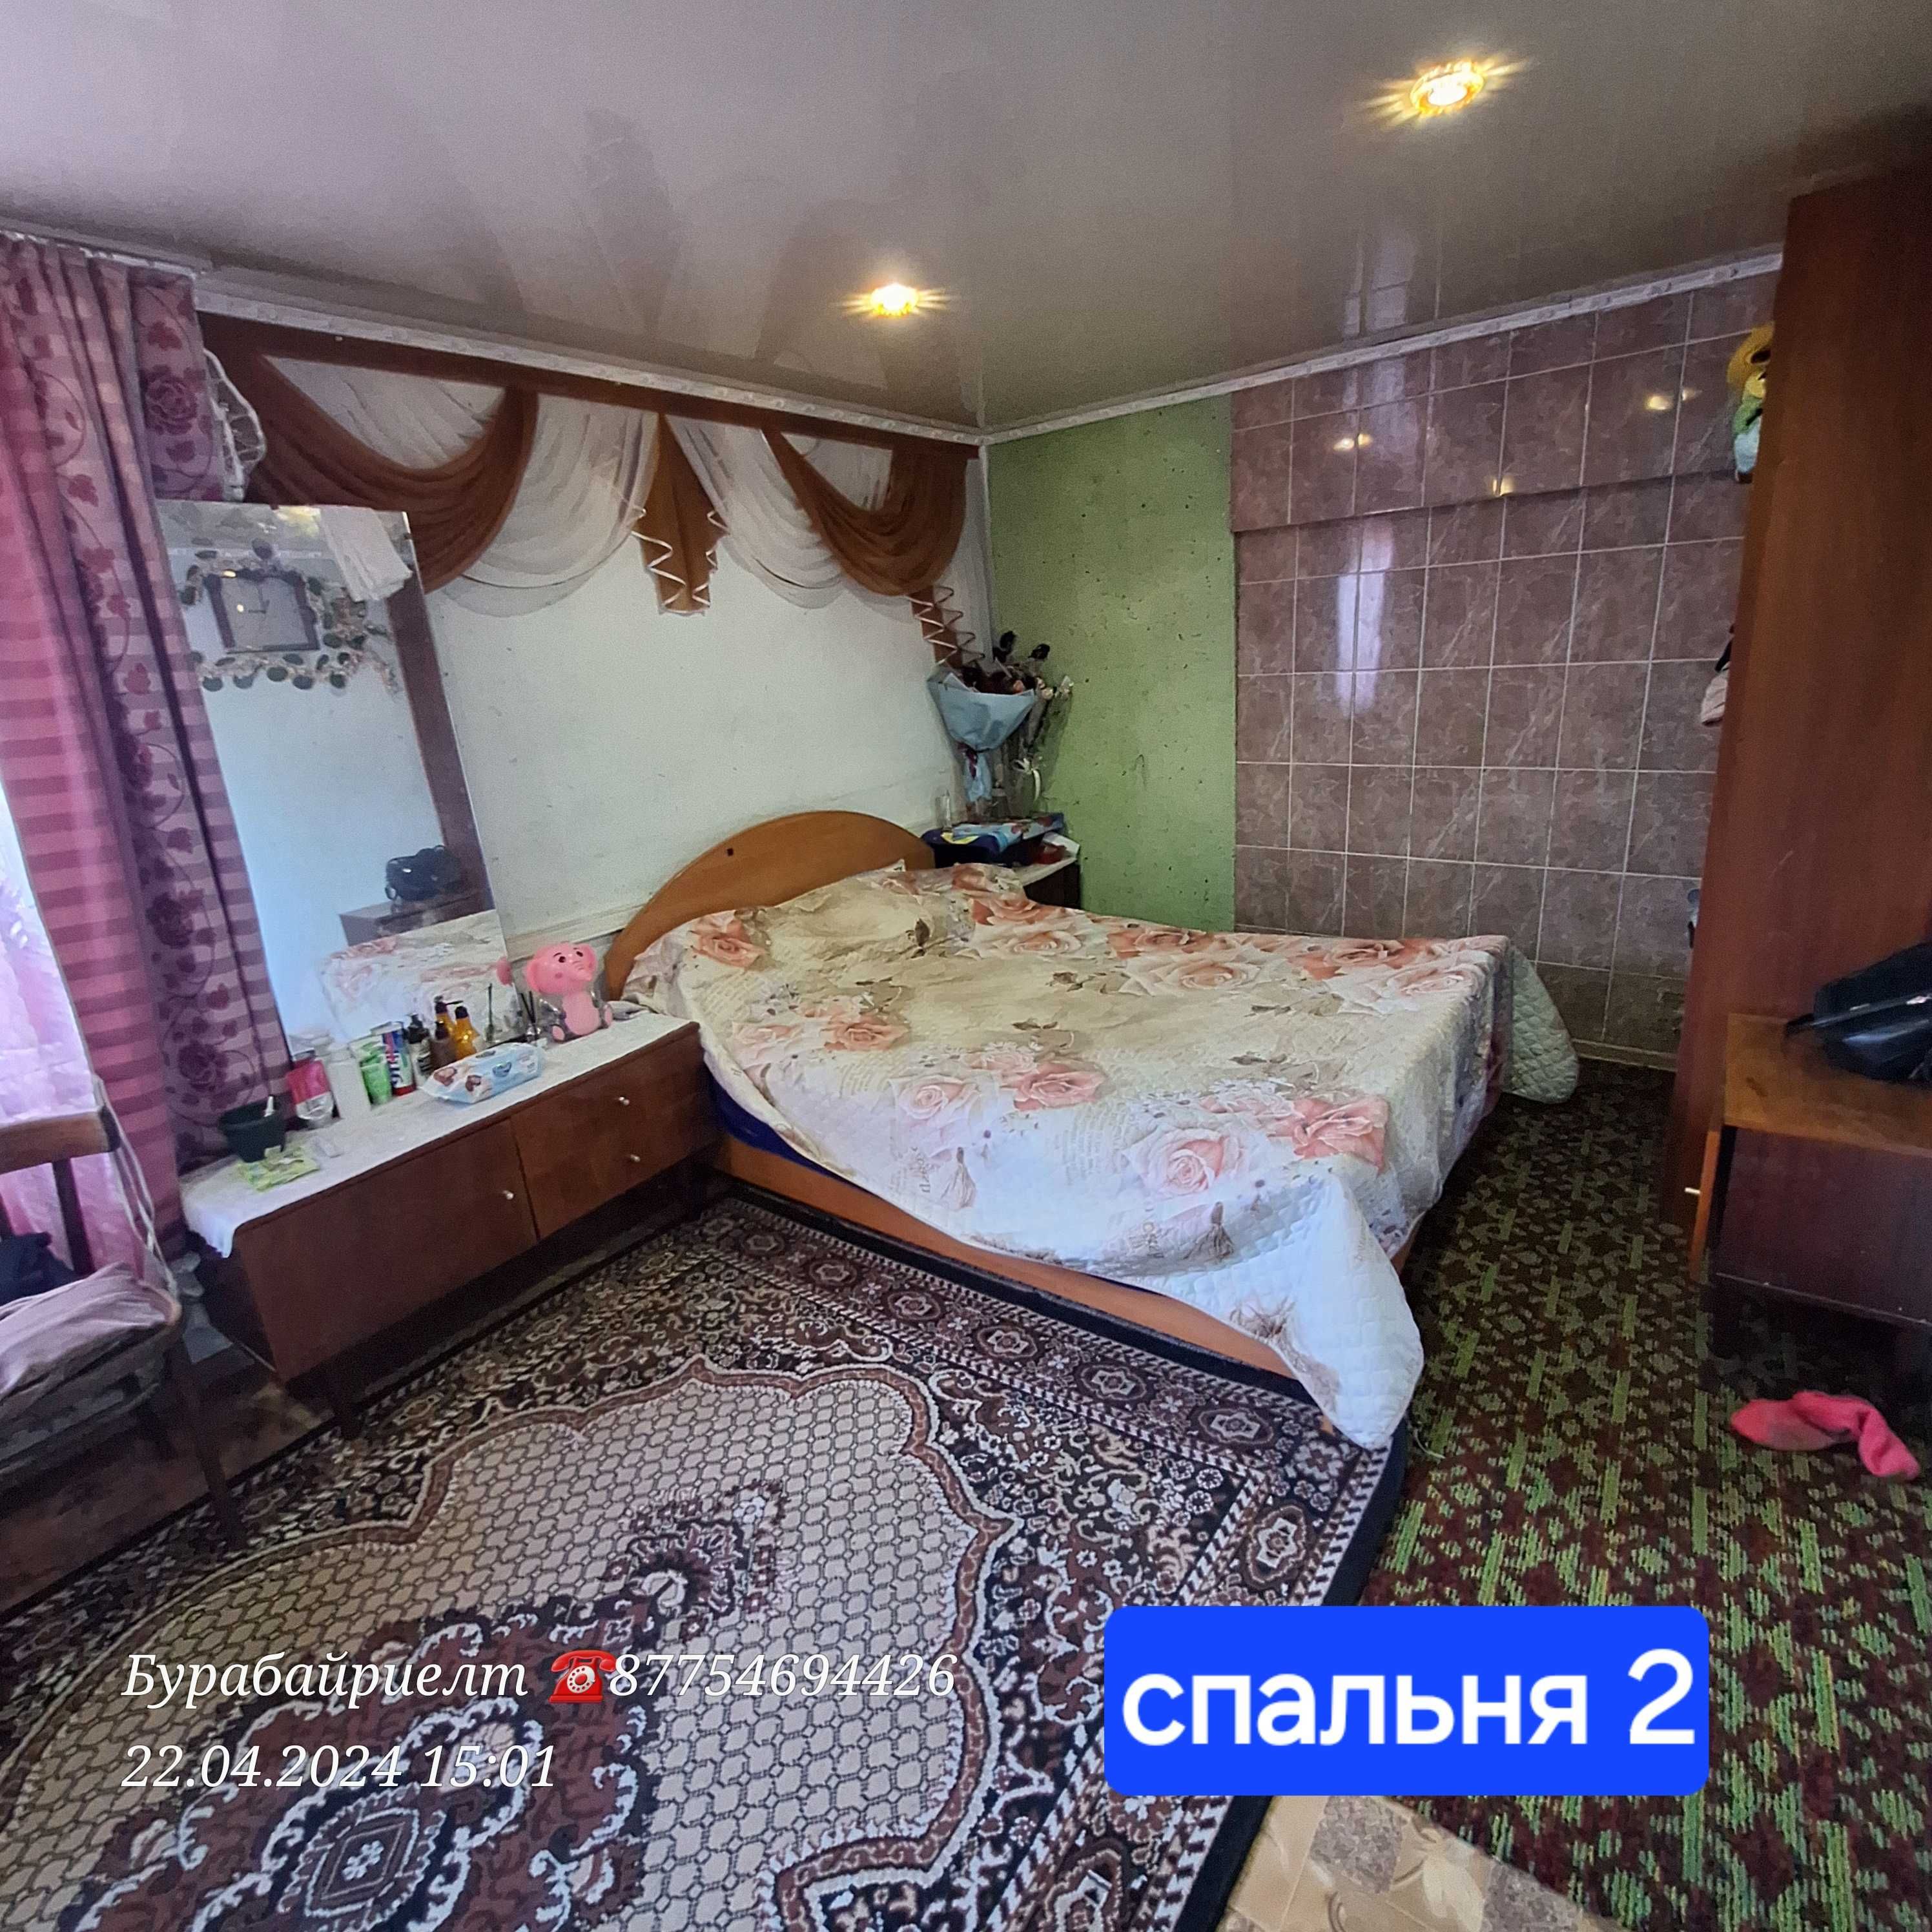 Продам 4ком дом в Щучинске